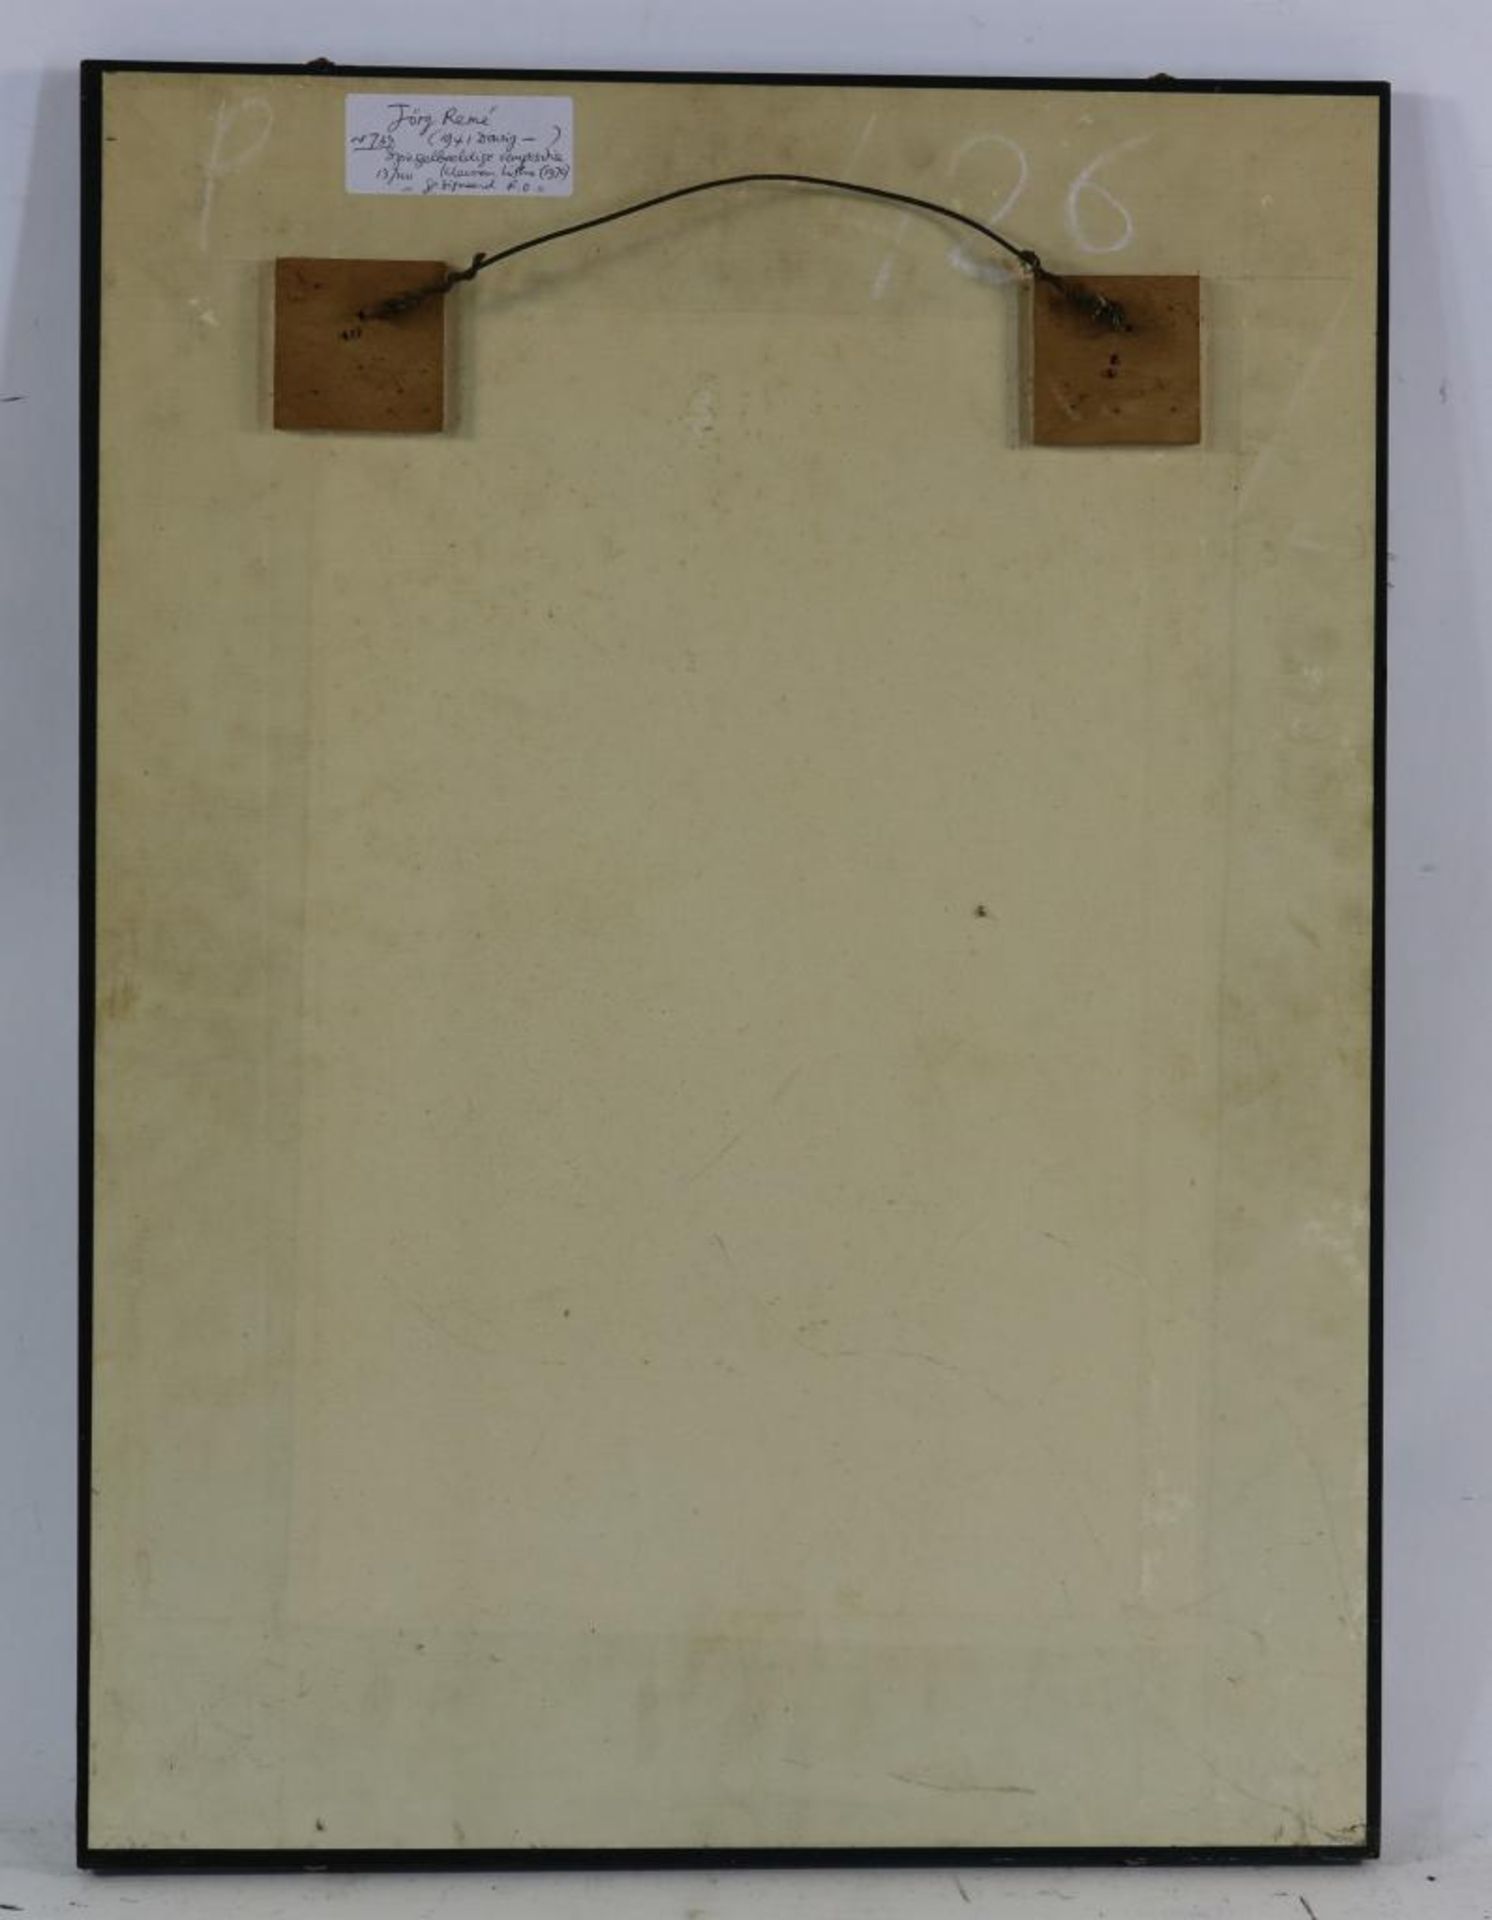 Remé, Jorg, signed, Mirrored image, screenprint 61 x 43 cm.REMé, JORG (1941), ges. en gedat. 1970 - Bild 3 aus 3